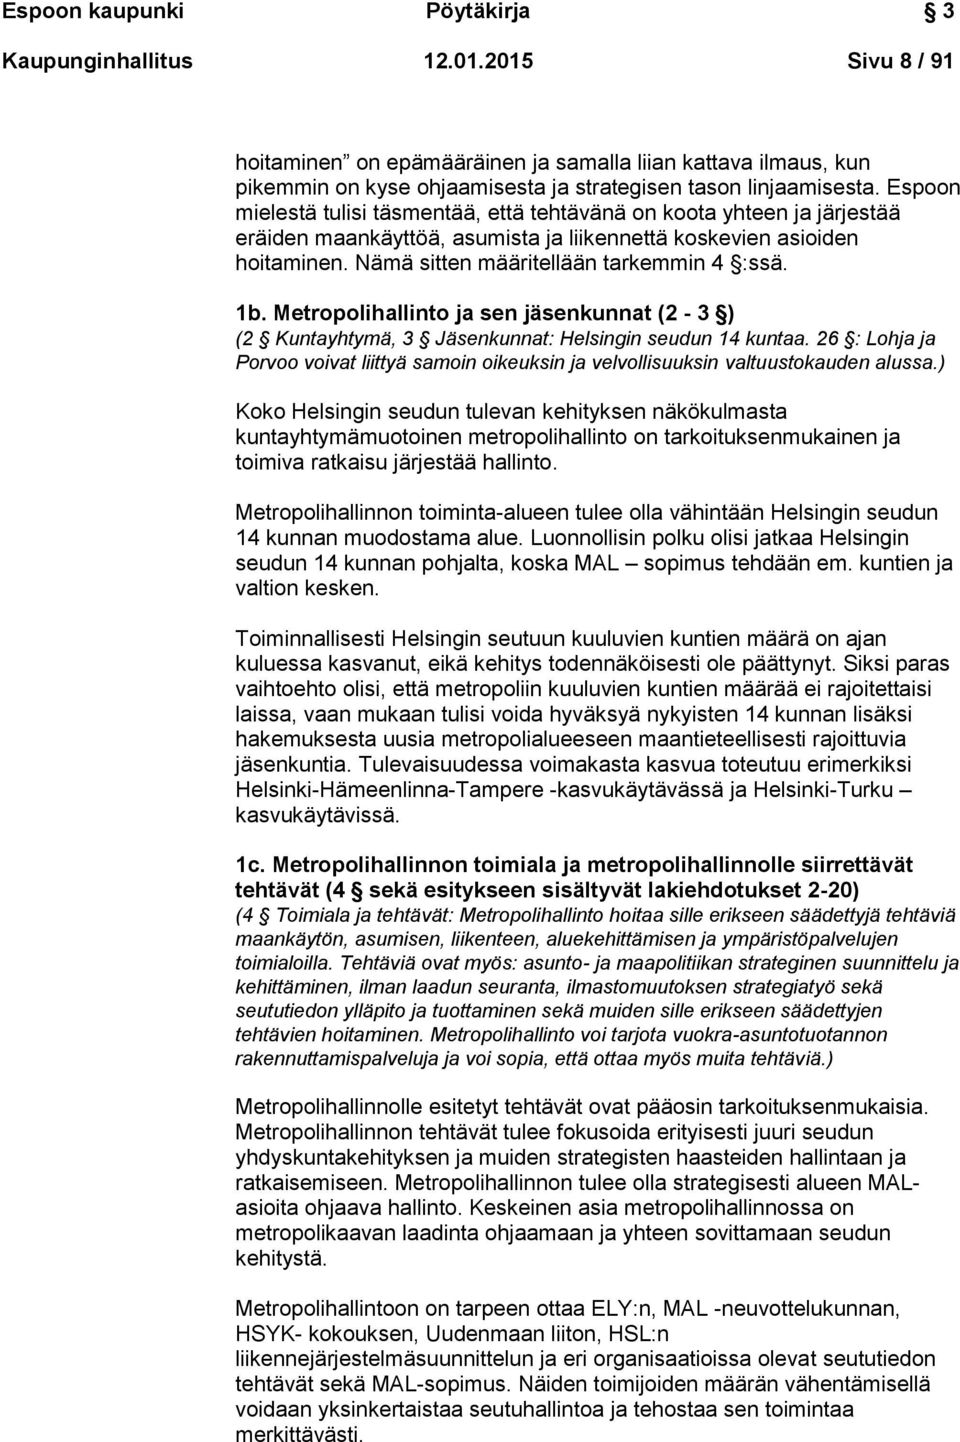 Metropolihallinto ja sen jäsenkunnat (2-3 ) (2 Kuntayhtymä, 3 Jäsenkunnat: Helsingin seudun 14 kuntaa. 26 : Lohja ja Porvoo voivat liittyä samoin oikeuksin ja velvollisuuksin valtuustokauden alussa.